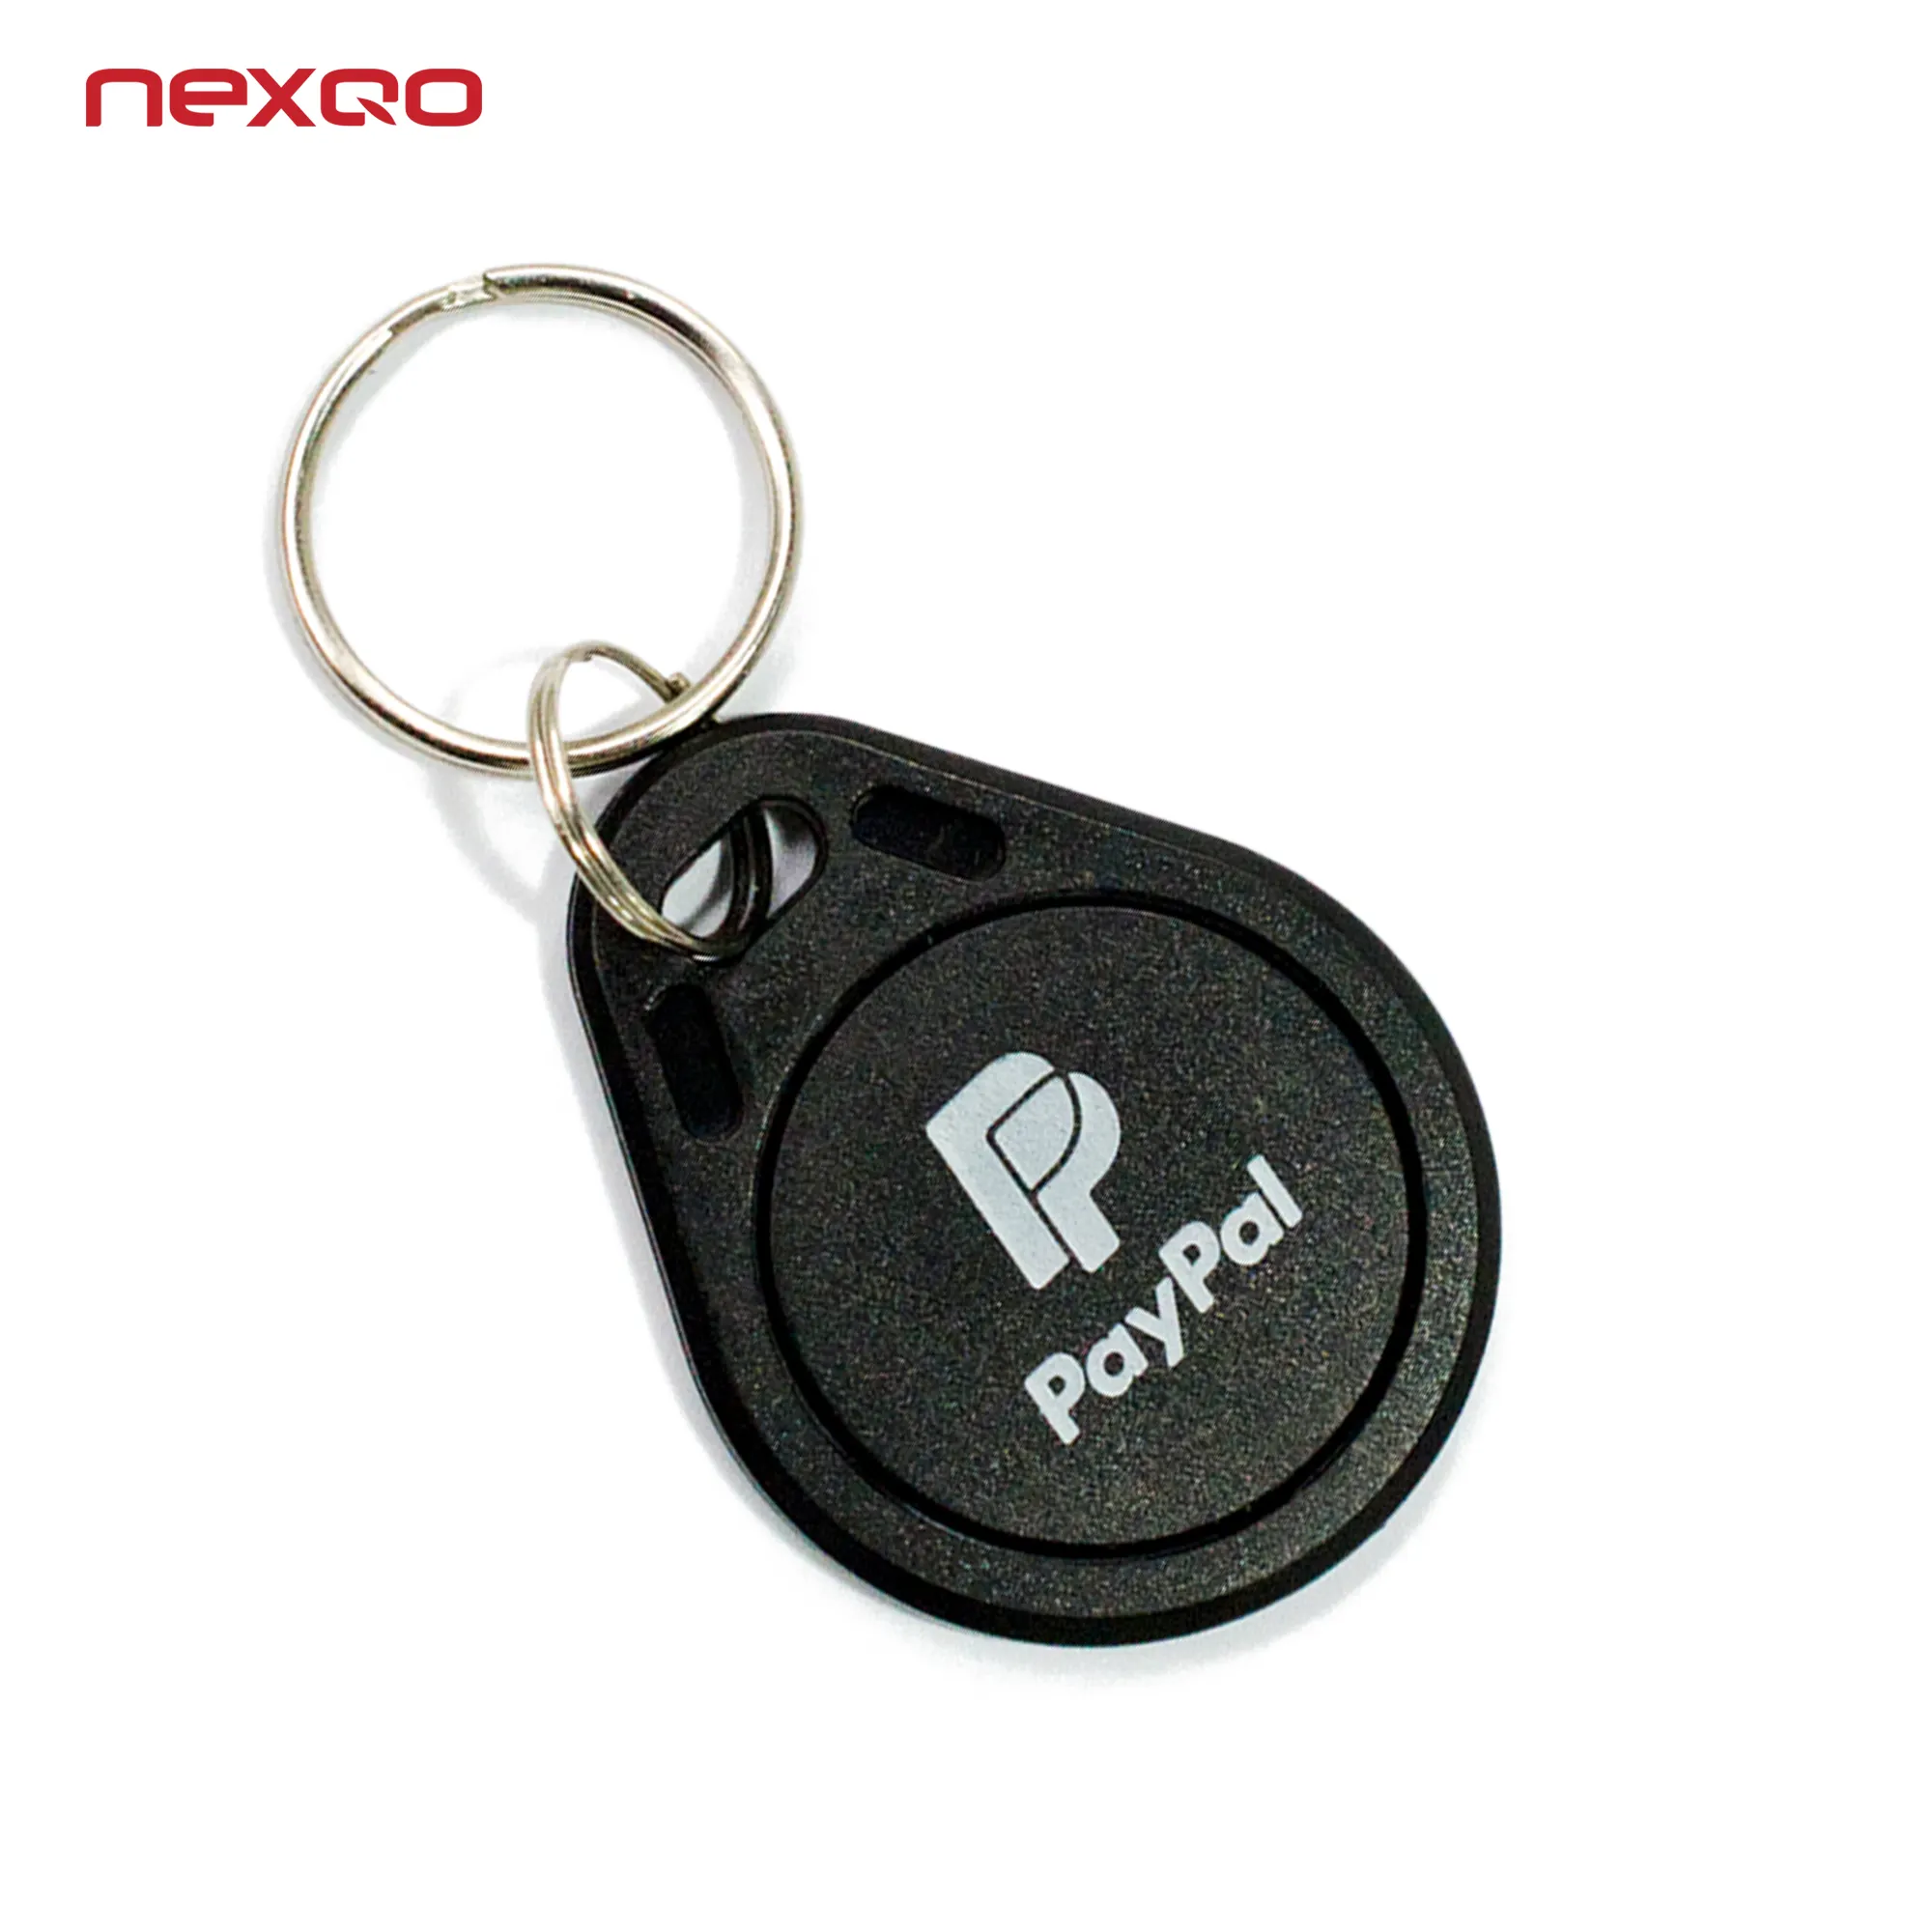 S0025 оптовая продажа, водонепроницаемый пластиковый ABS Электронный NFC RFID брелок для ключей